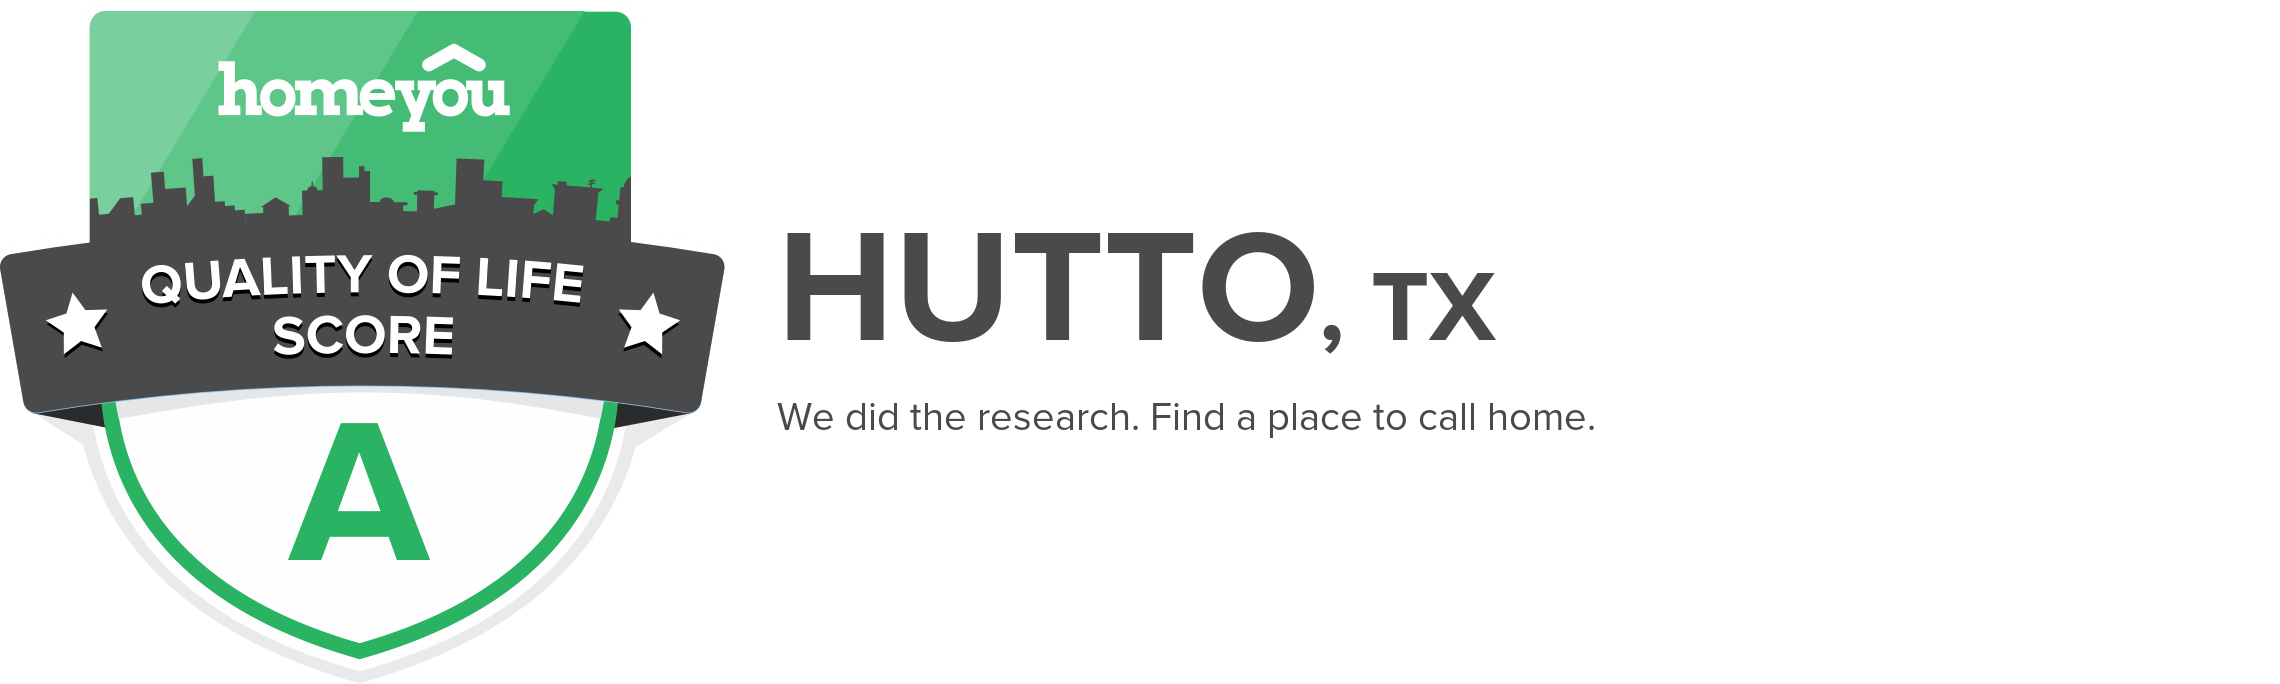 Hutto, TX